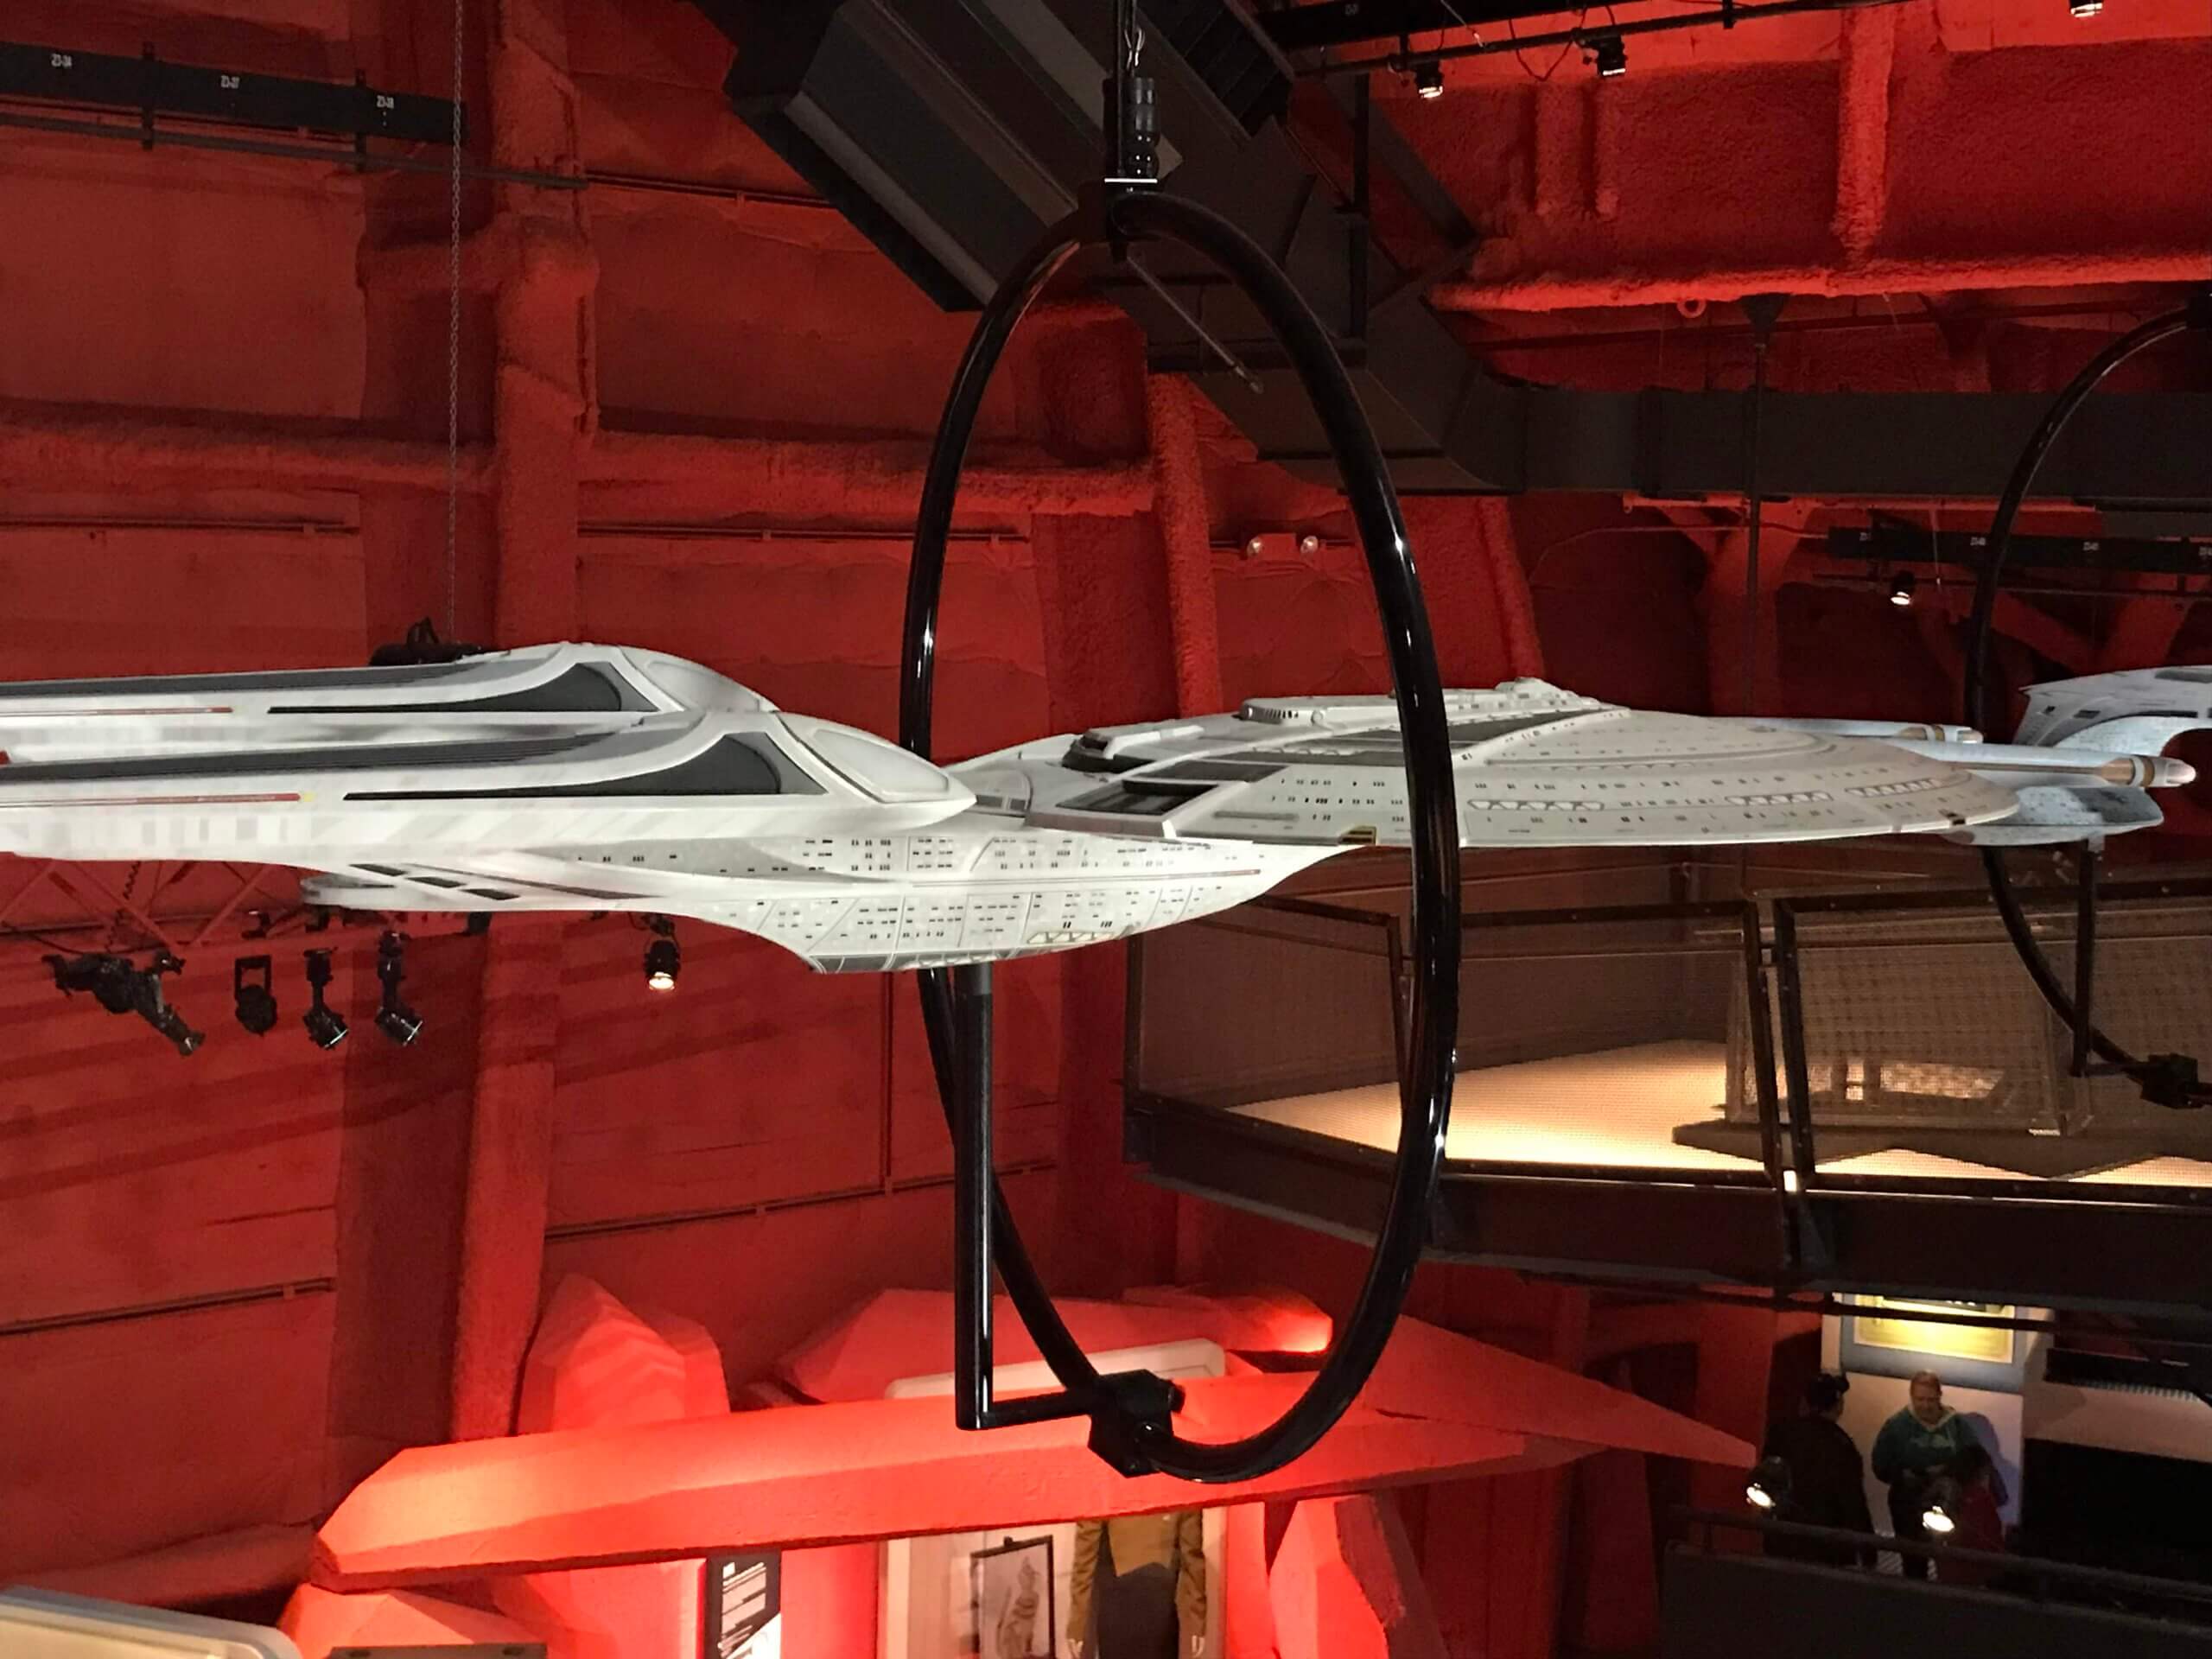 דגם של החללית אנטרפרייז באולם המוקדש לסדרת "מסע בין כוכבים" במוזיאון המדע בסיאטל צילום: אבי בליזובסקי